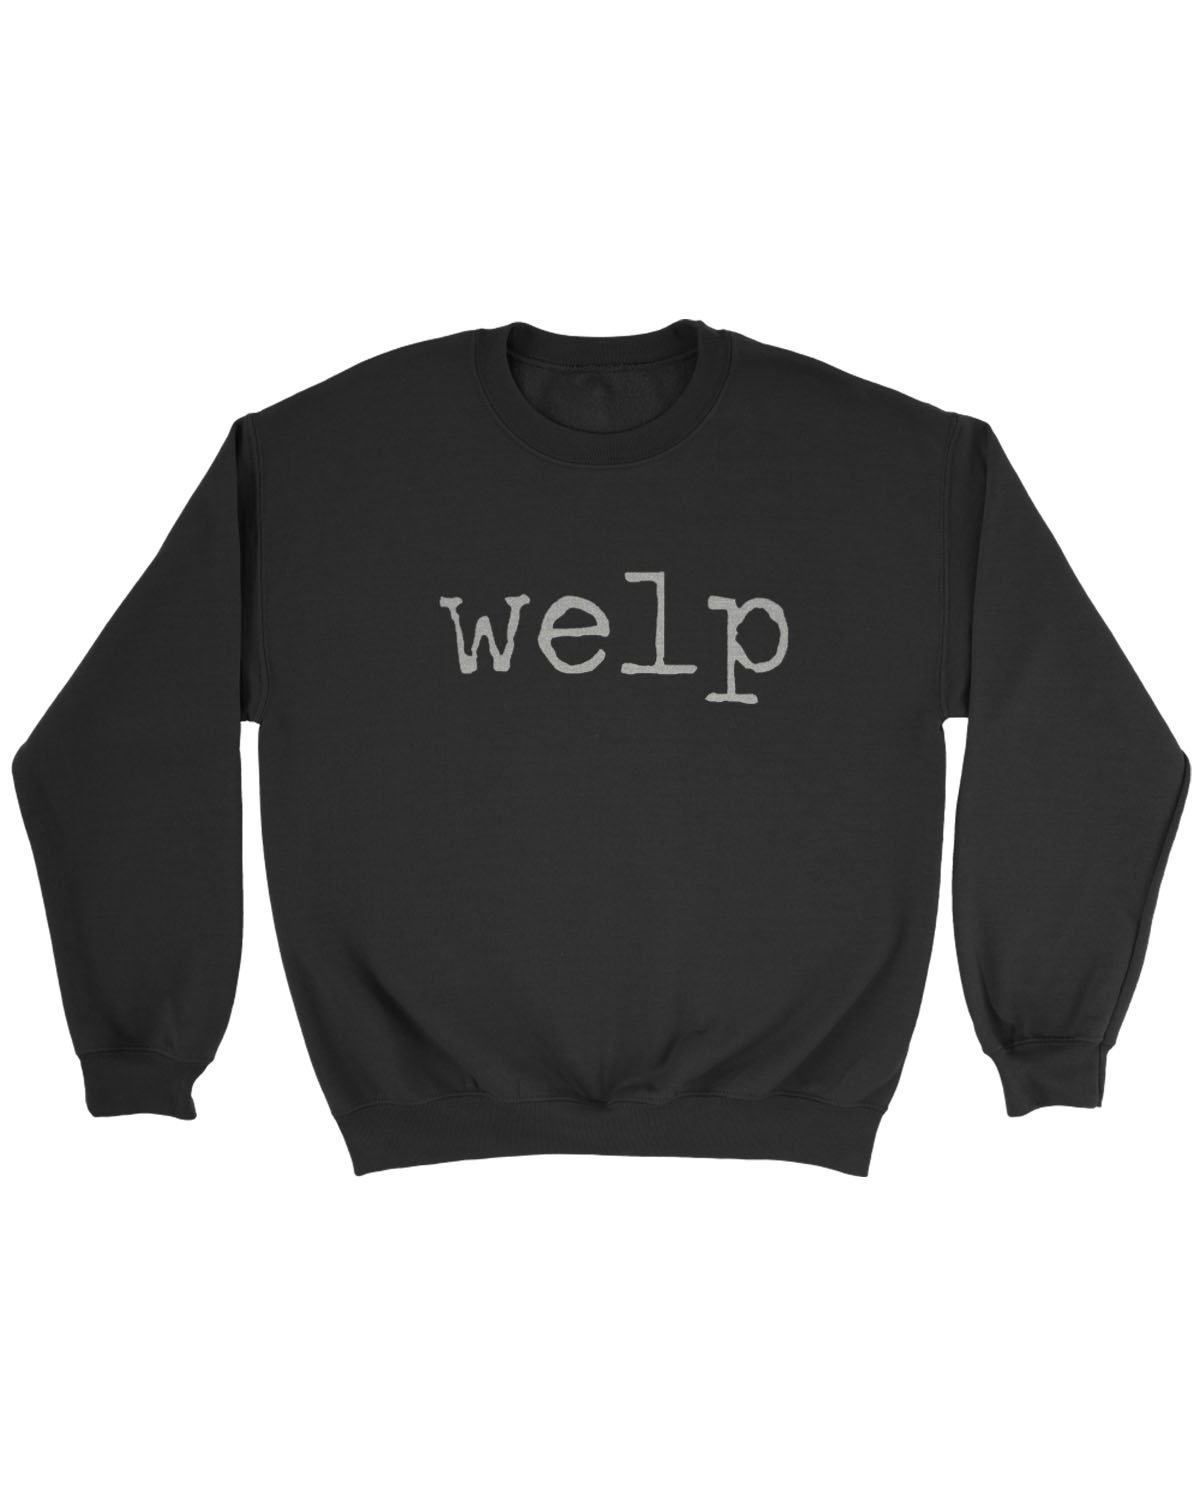 Welp Funny Sweatshirt